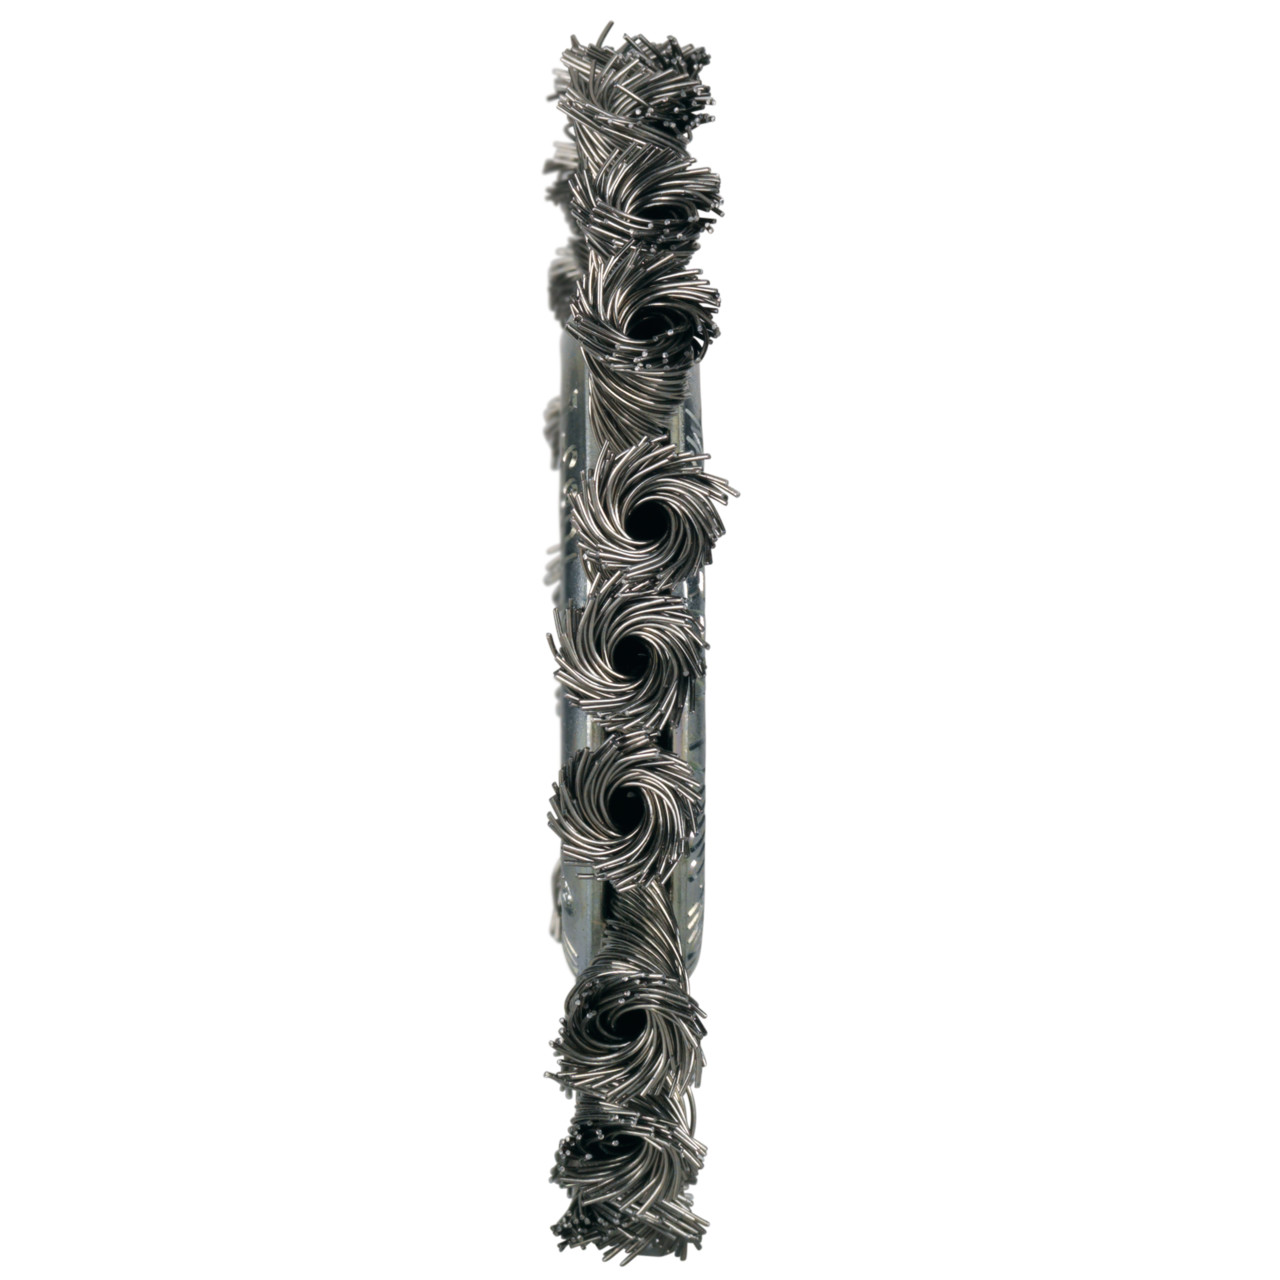 Tyrolit Cepillos redondos DxAxLxGE 115x11x23xM14 Para acero inoxidable, forma: 1RDZ - (cepillo redondo), Art. 890626